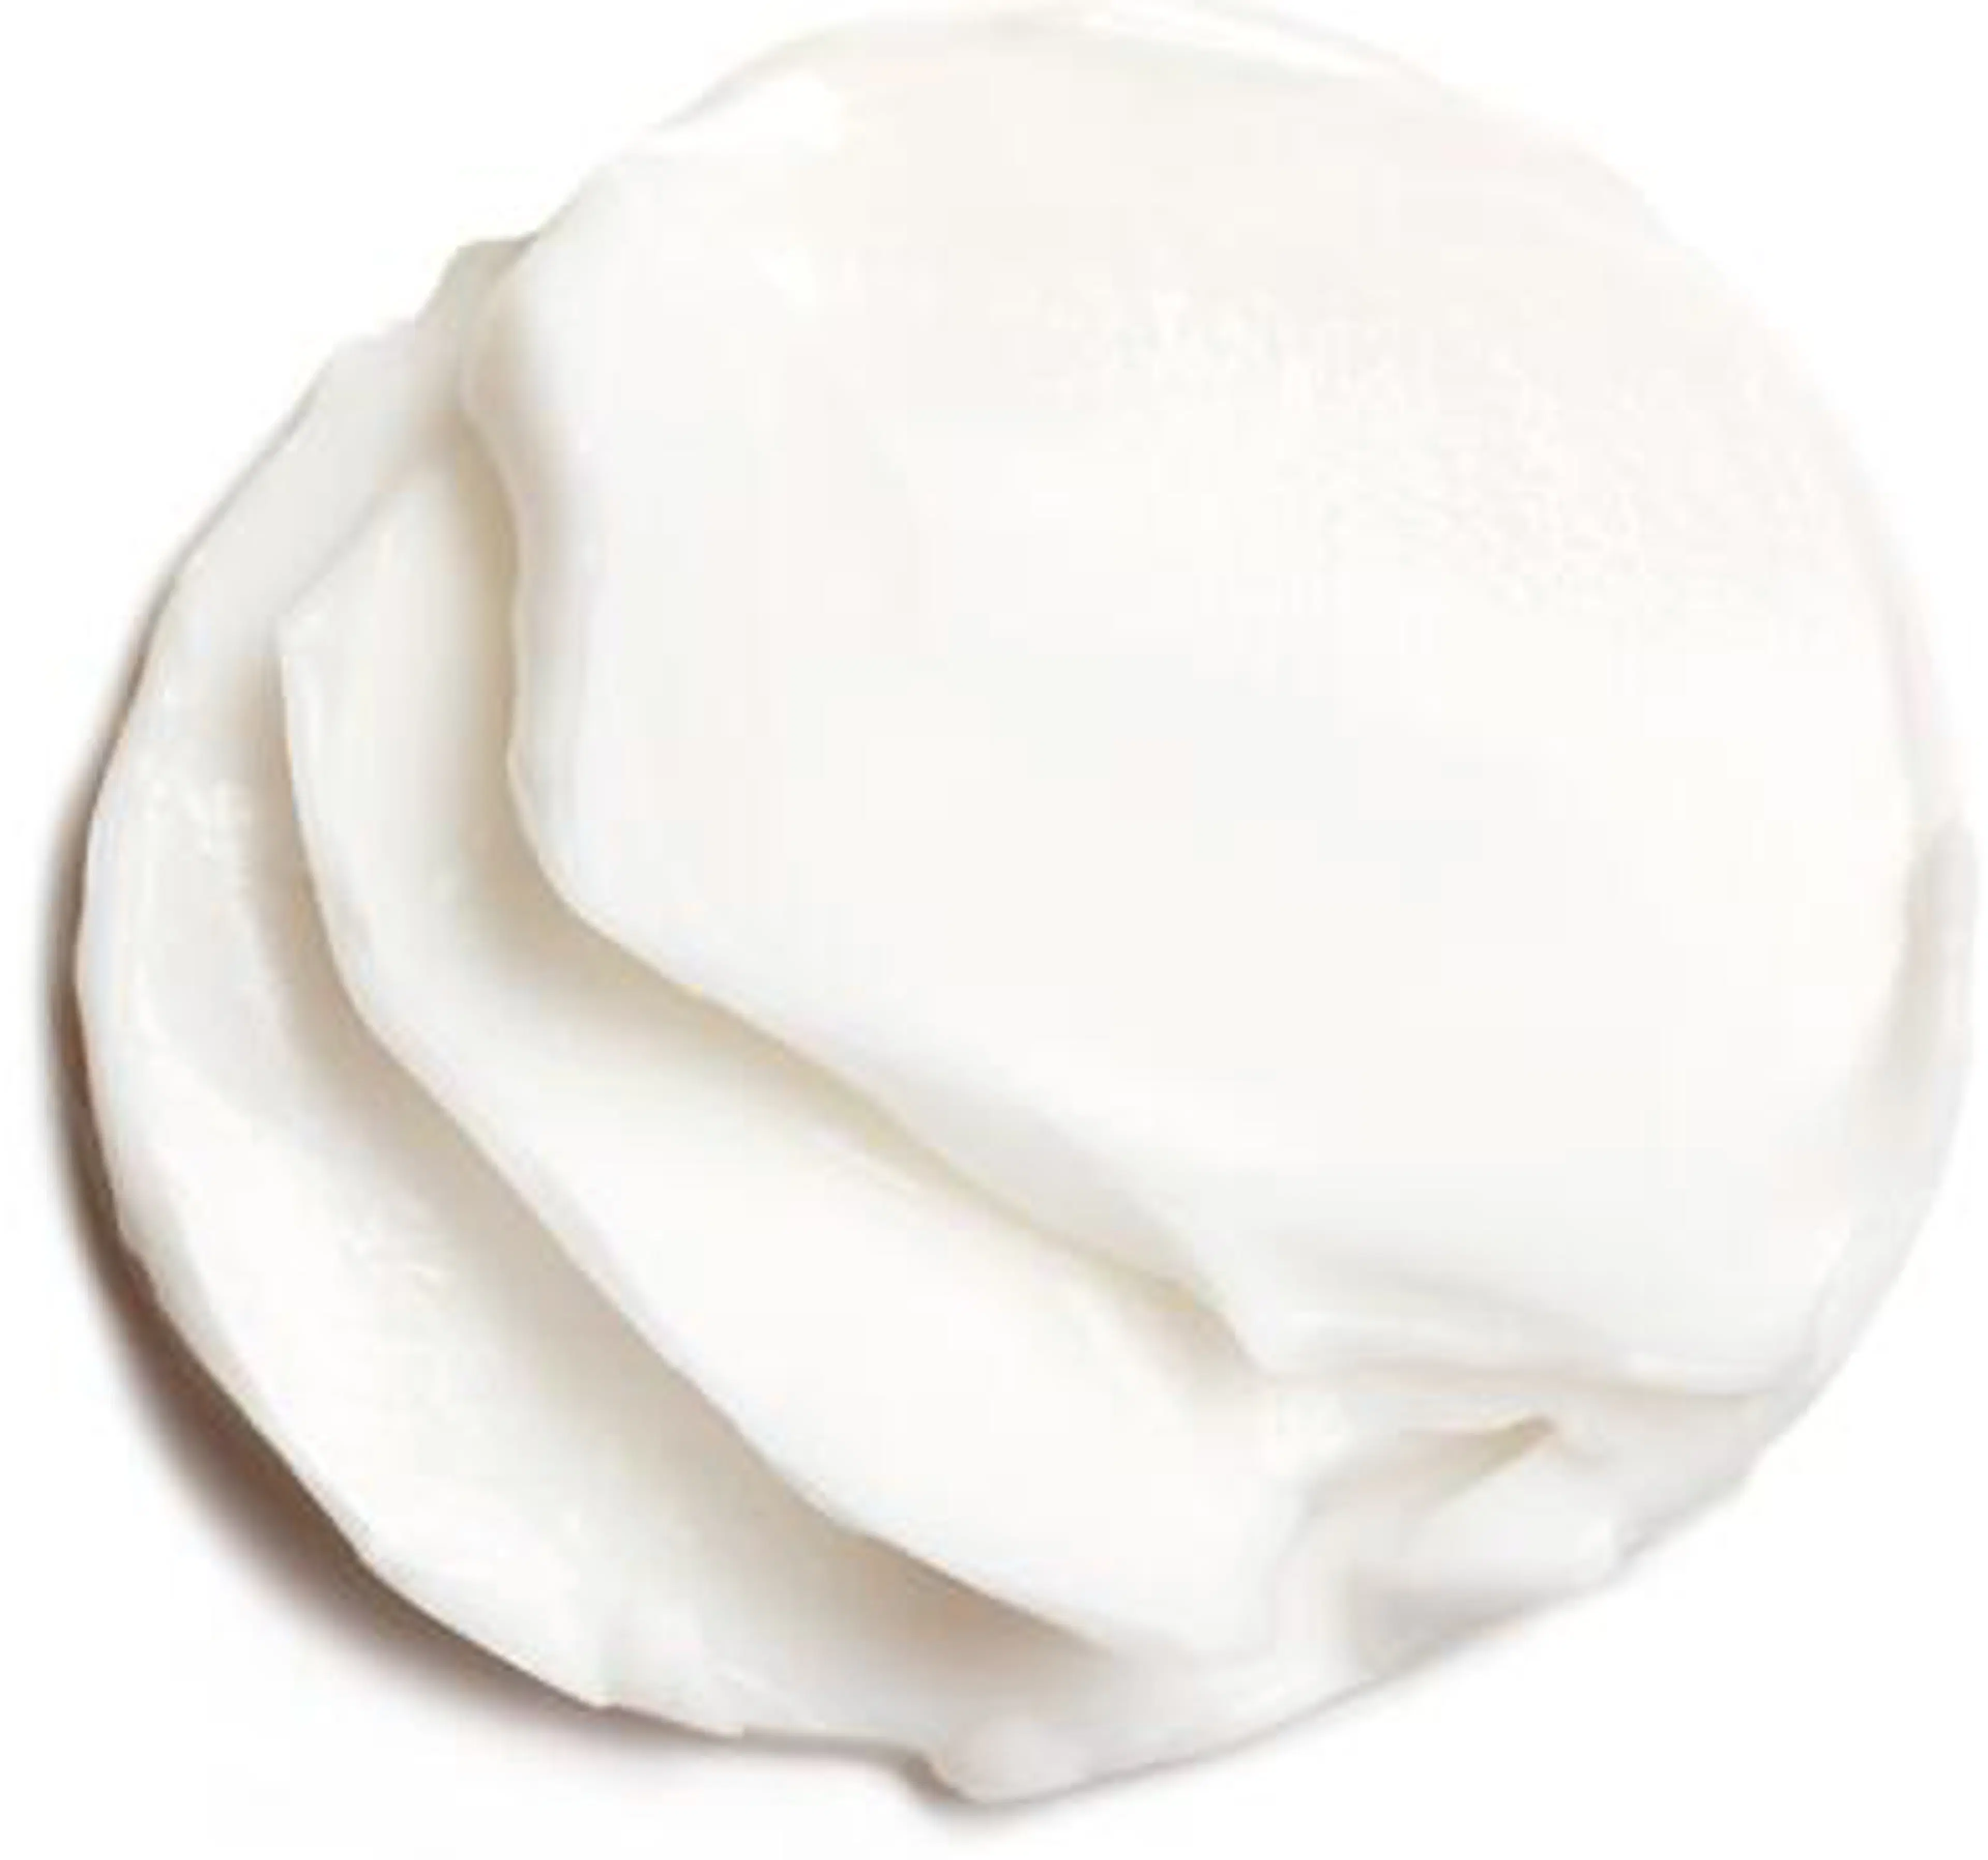 Clarins Hydra-Essentiel [HA²] Rich Cream päivävoide 50 ml